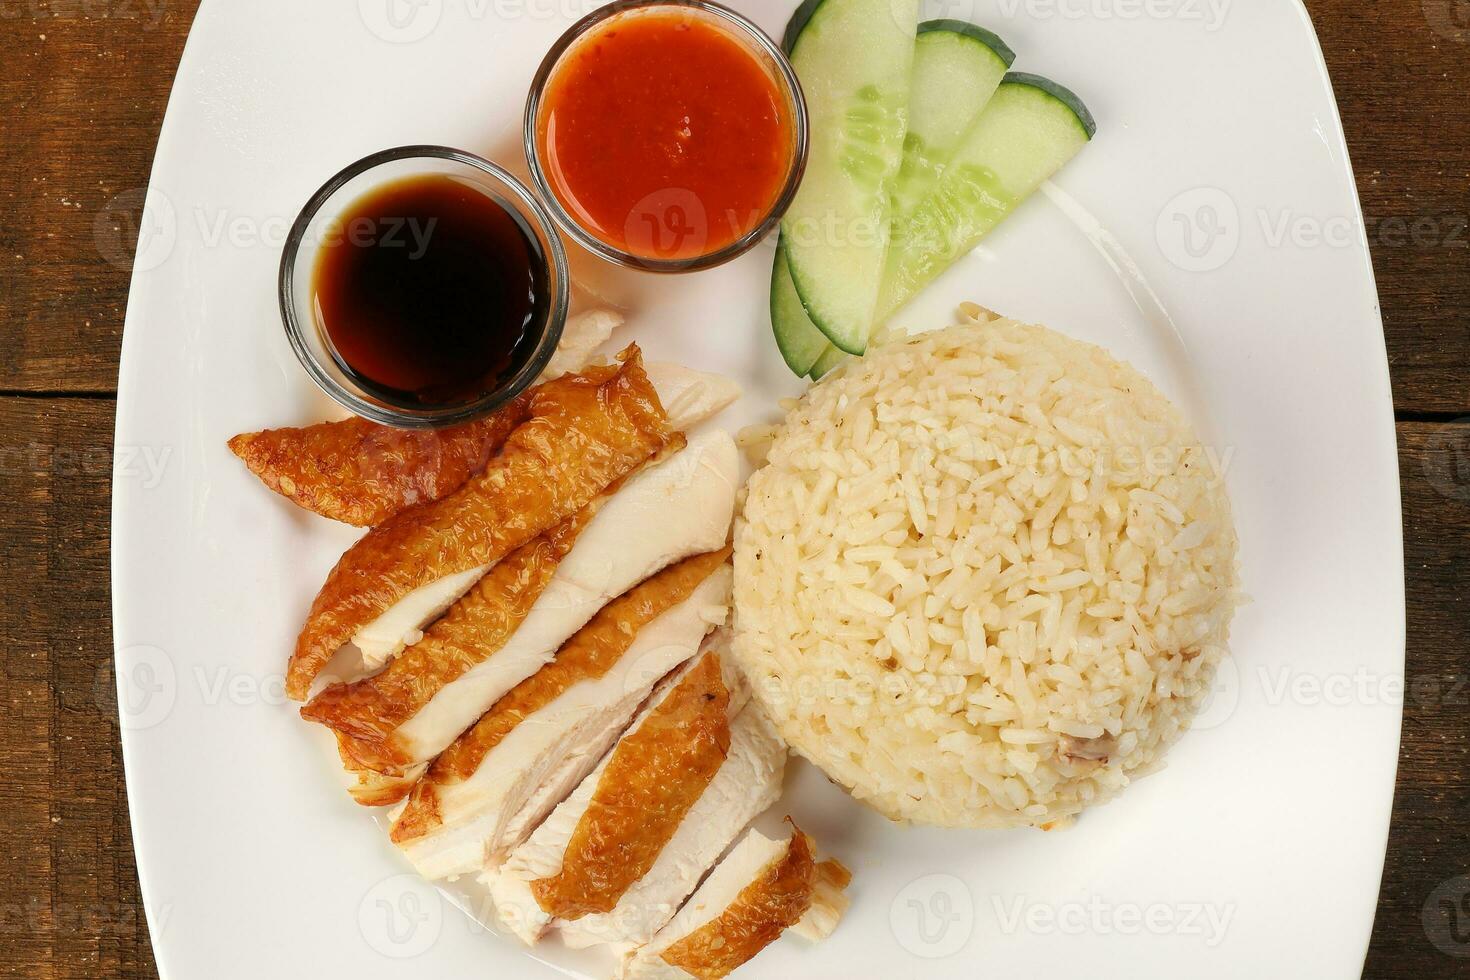 Süd Osten asiatisch Stil Hähnchen Reis einstellen gedämpft geröstet geschnitten Hähnchen mit Suppe dunkel Chili Soße Malaysia China foto